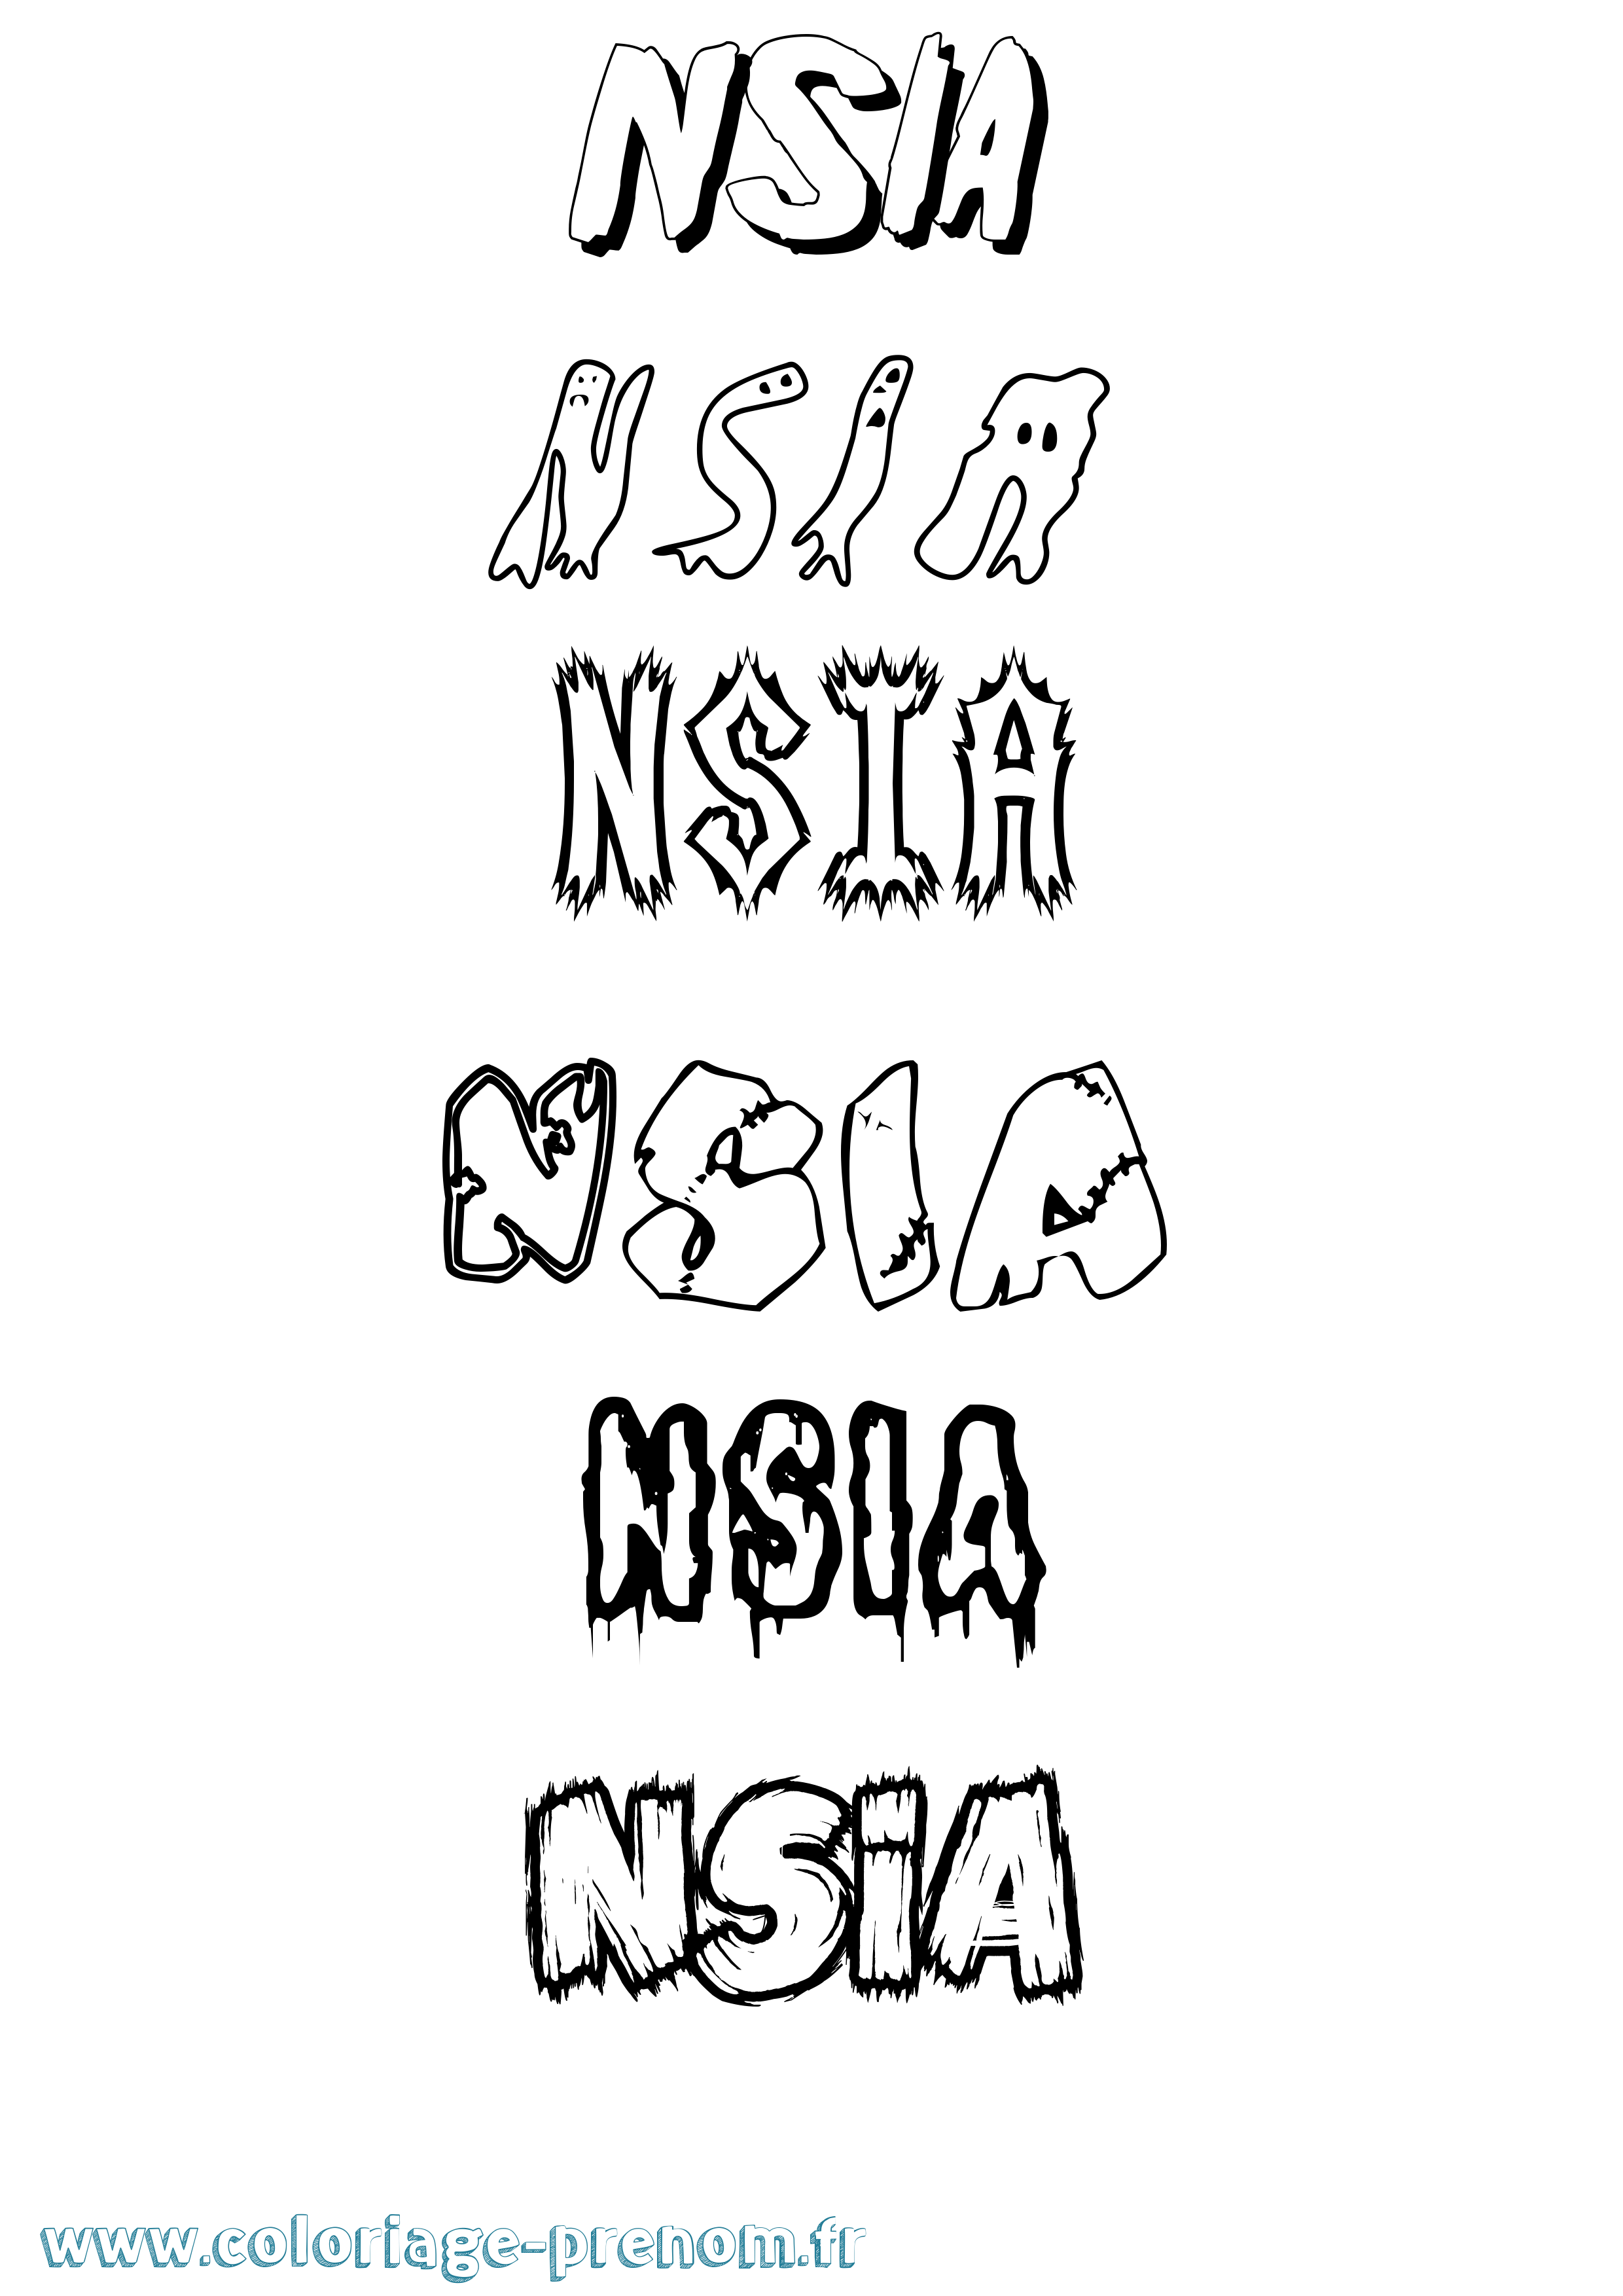 Coloriage prénom Nsia Frisson